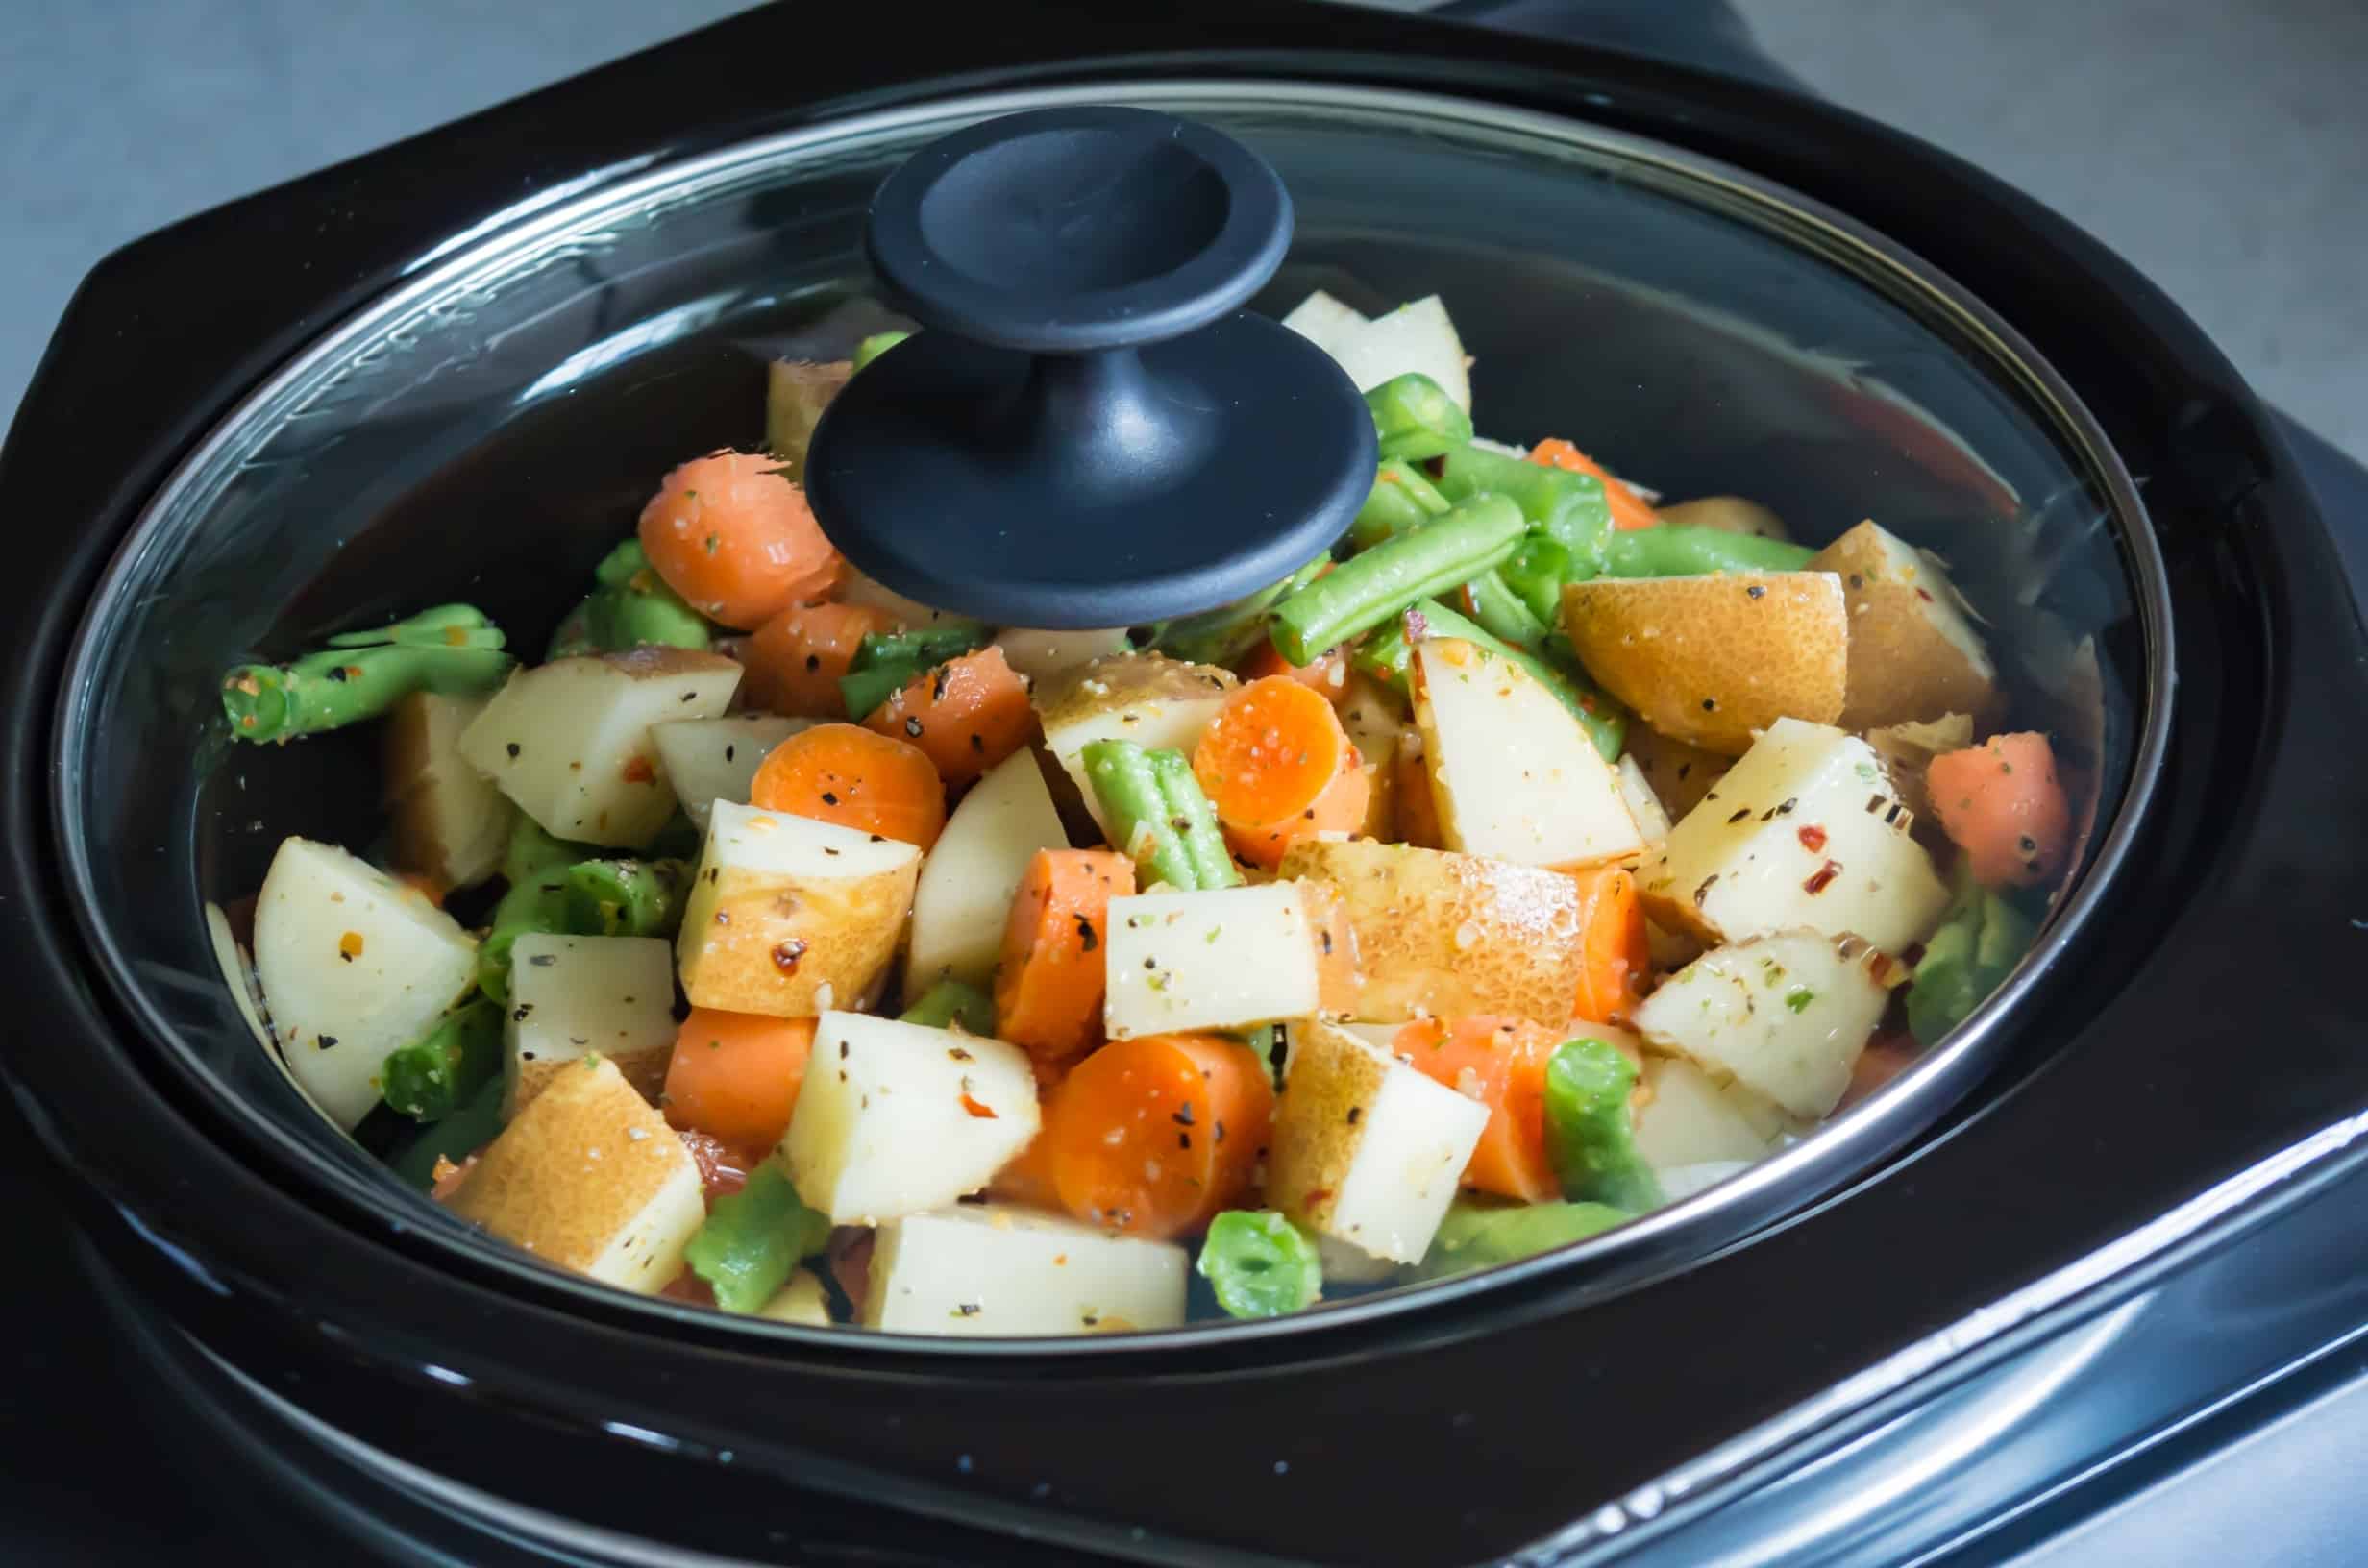 Do vegetables go mushy in slow cooker?